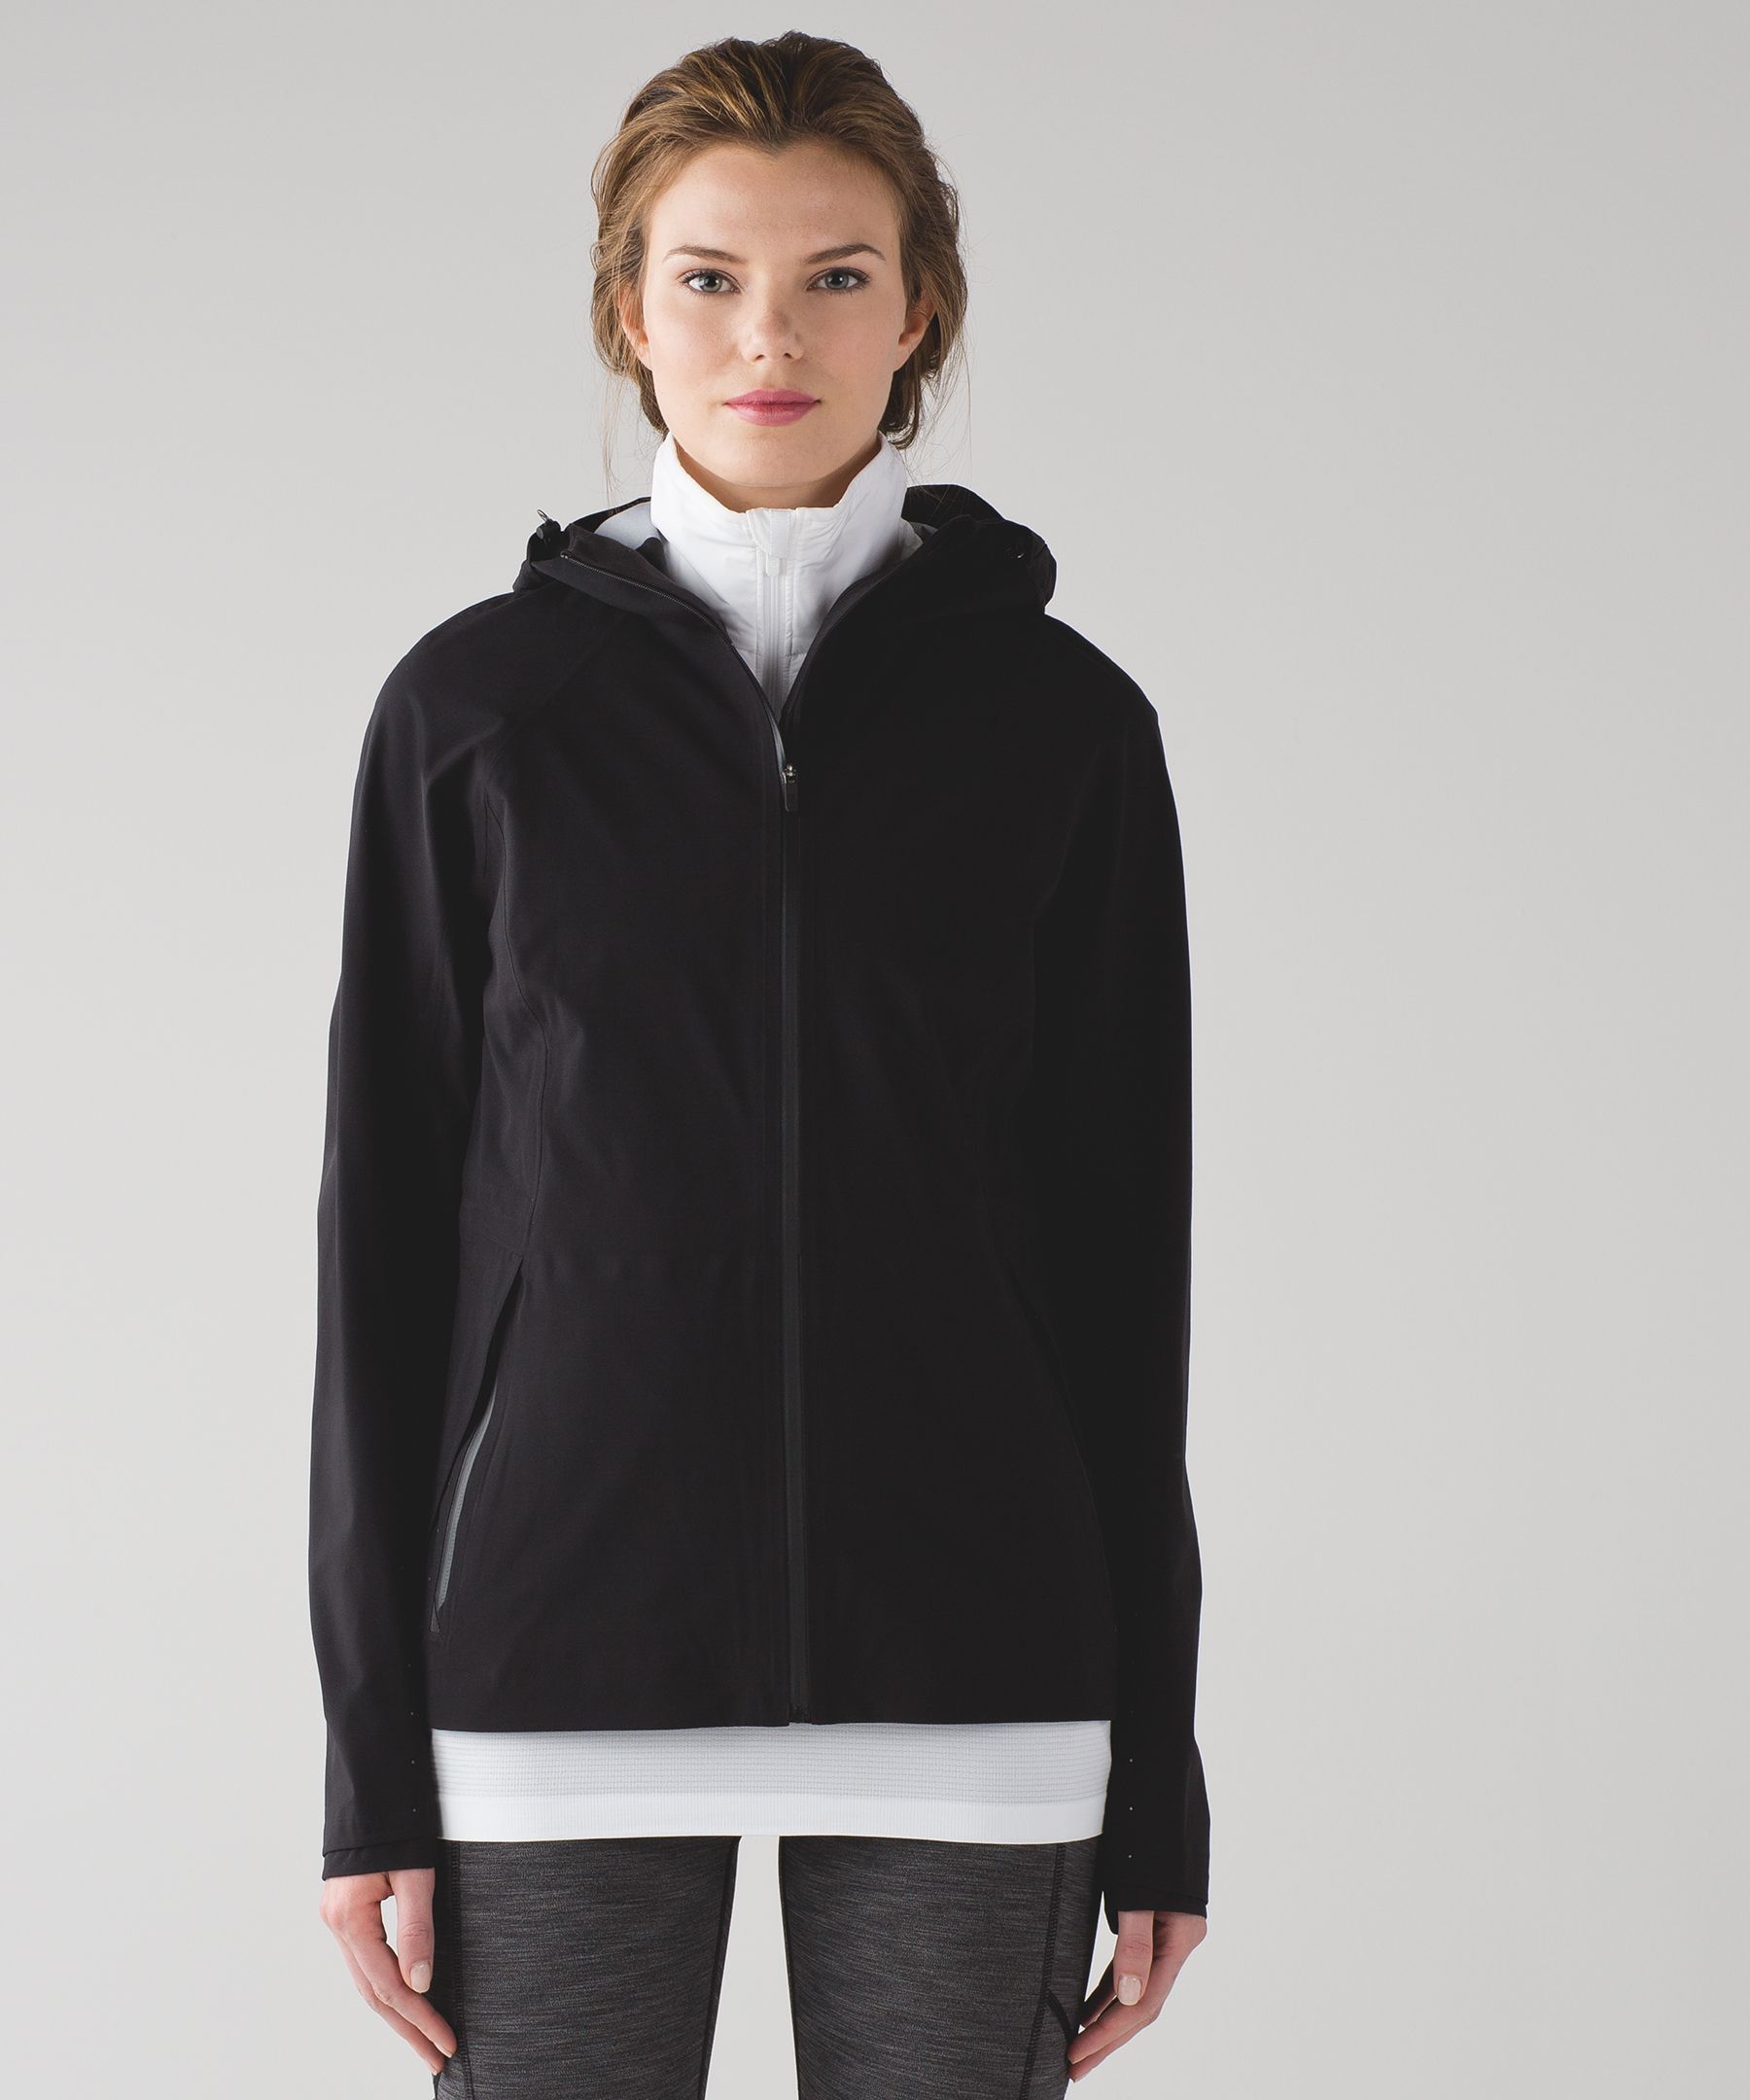 The Rain Is Calling Jacket | Women's Jackets + Outerwear | lululemon ...